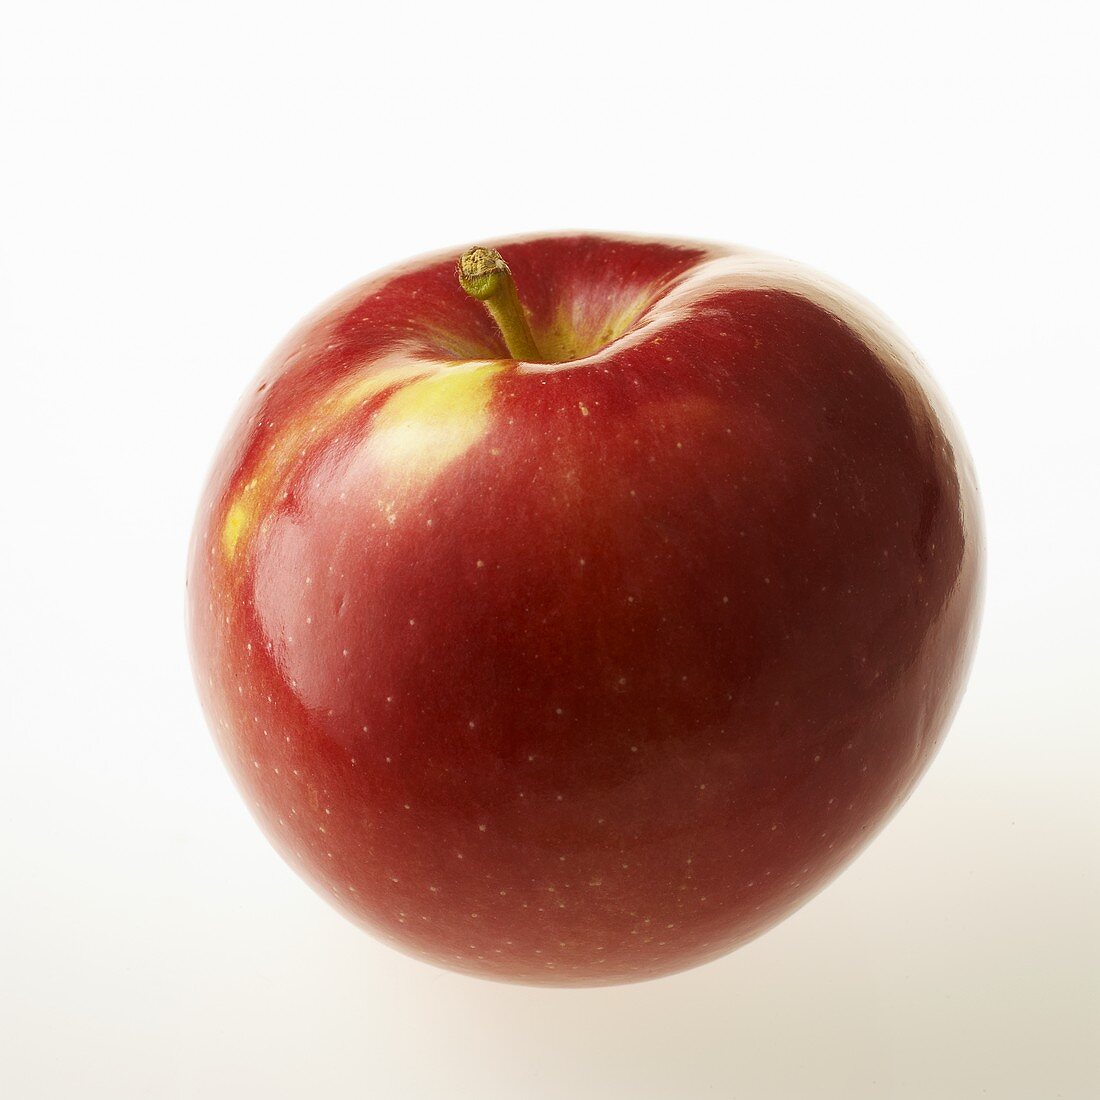 Ein Apfel der Apfelsorte McIntosh